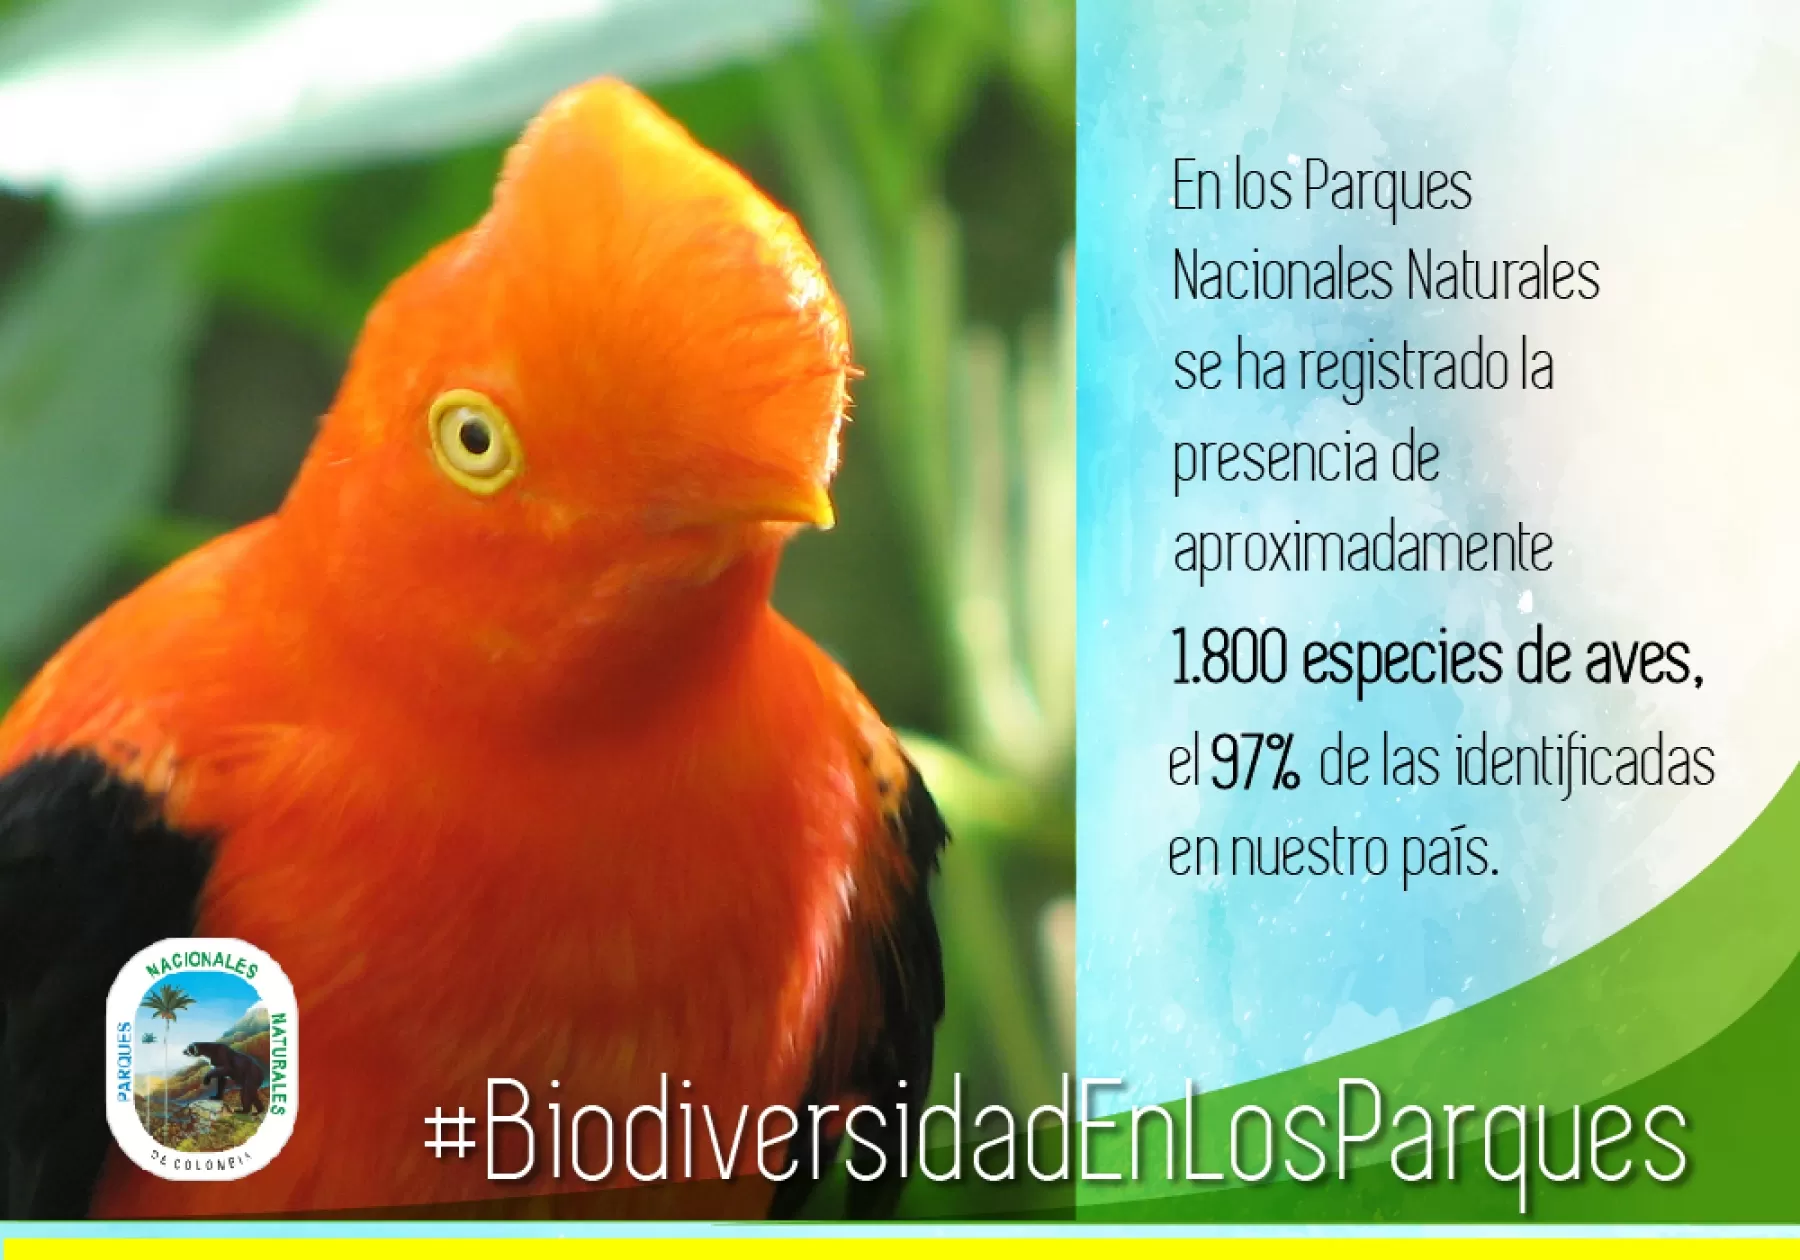 Parques Nacionales Naturales de Colombia rinde un homenaje a las especies silvestres existentes en nuestro país, con el fin de que los colombianos reflexionen sobre la importancia de cuidar y preservar la fauna y flora.